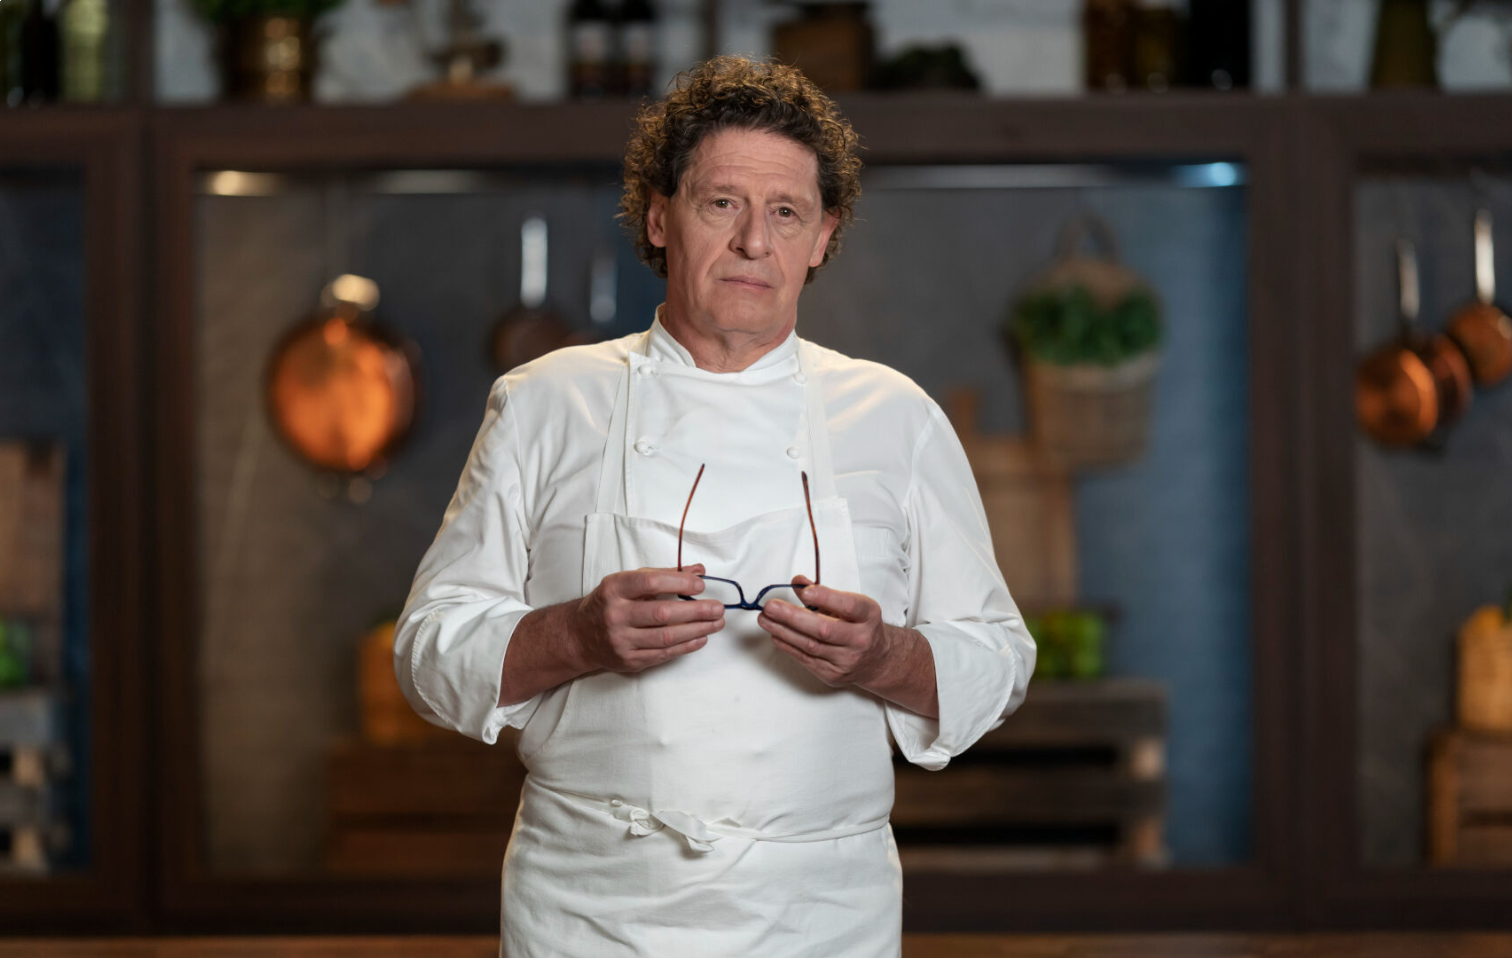 copertina marco pierre white chef in tv